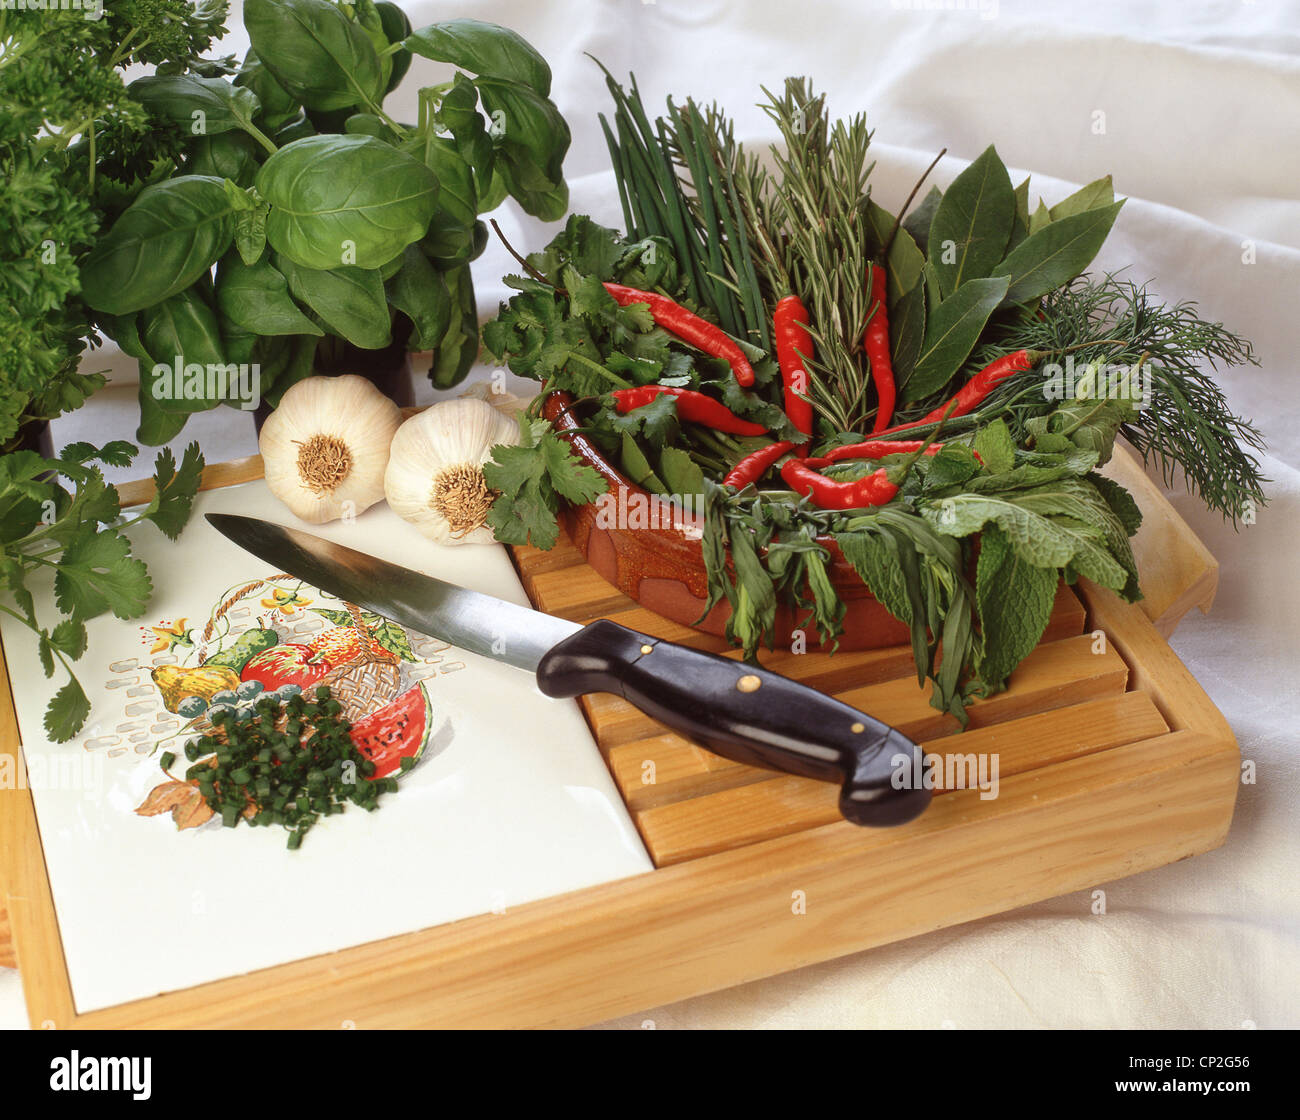 Le couteau à découper avec de l'ail, les piments et les herbes, Berkshire, Angleterre, Royaume-Uni Banque D'Images